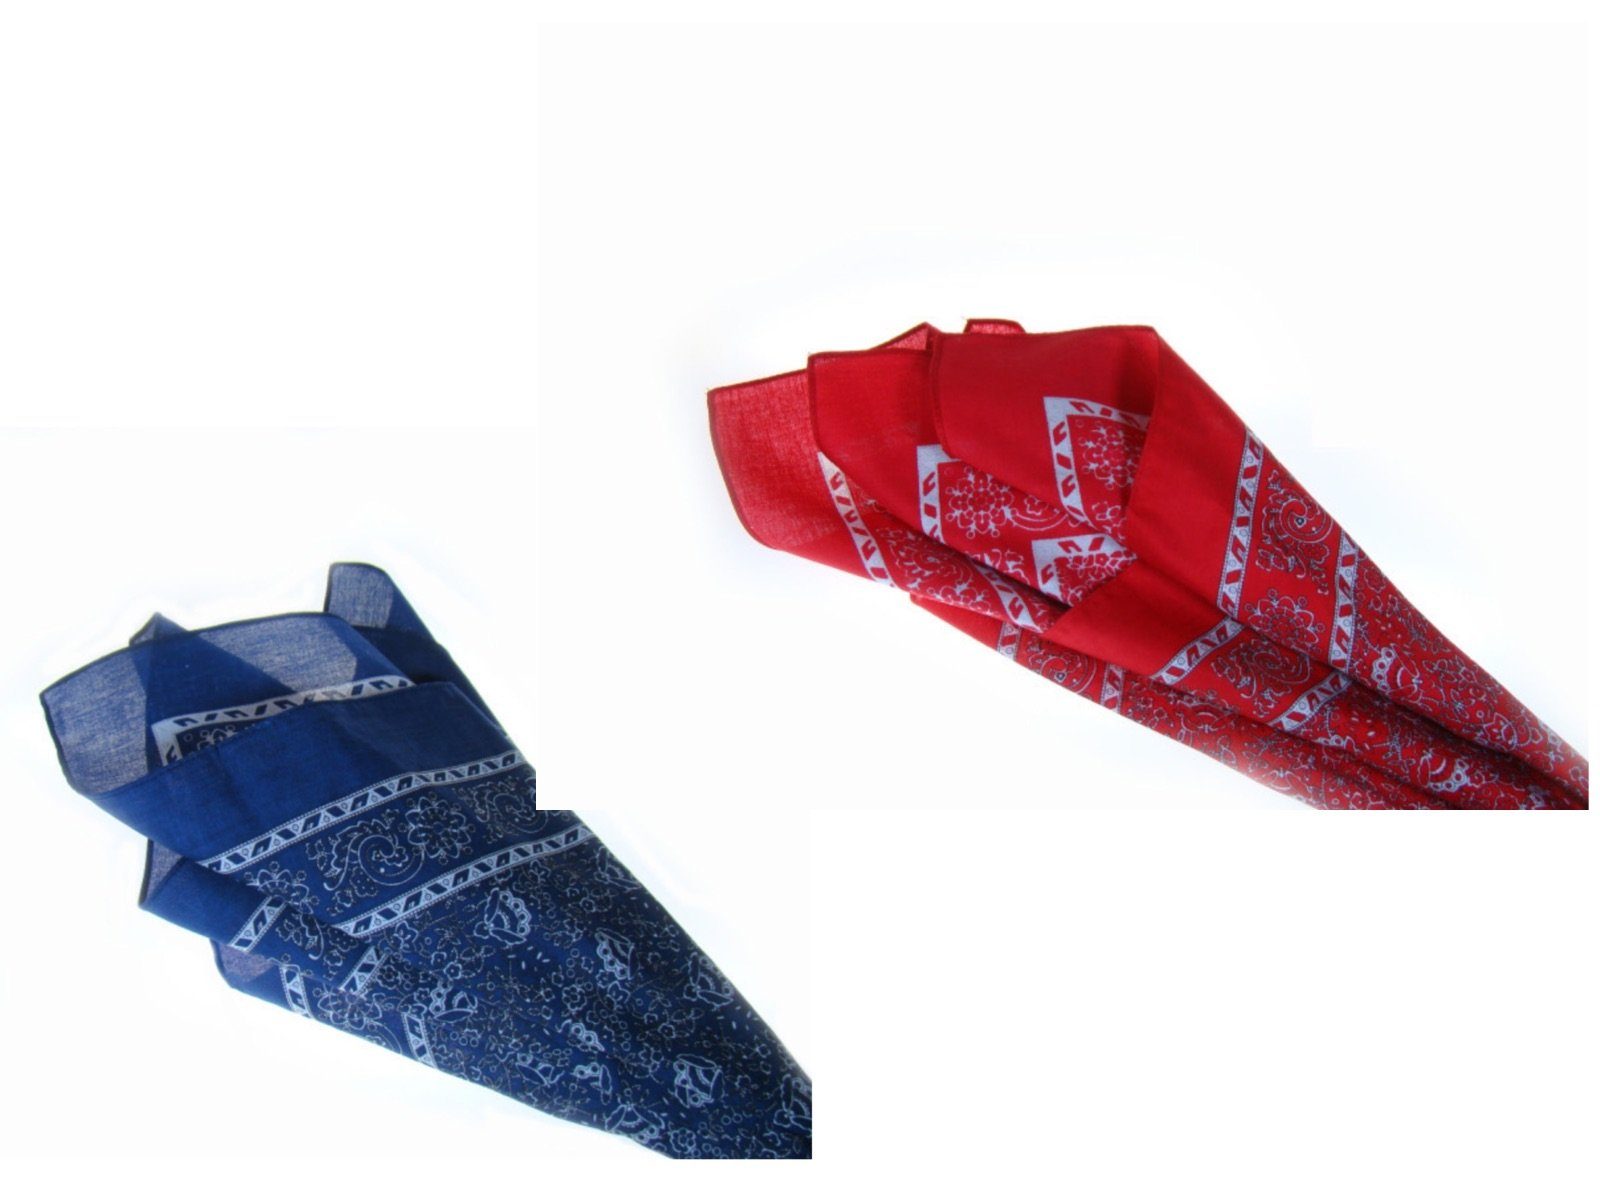 LK Trend & Style Nickituch Kopftuch Bandana, das modische Design bleibt im Trend Blau Venezian und Rot